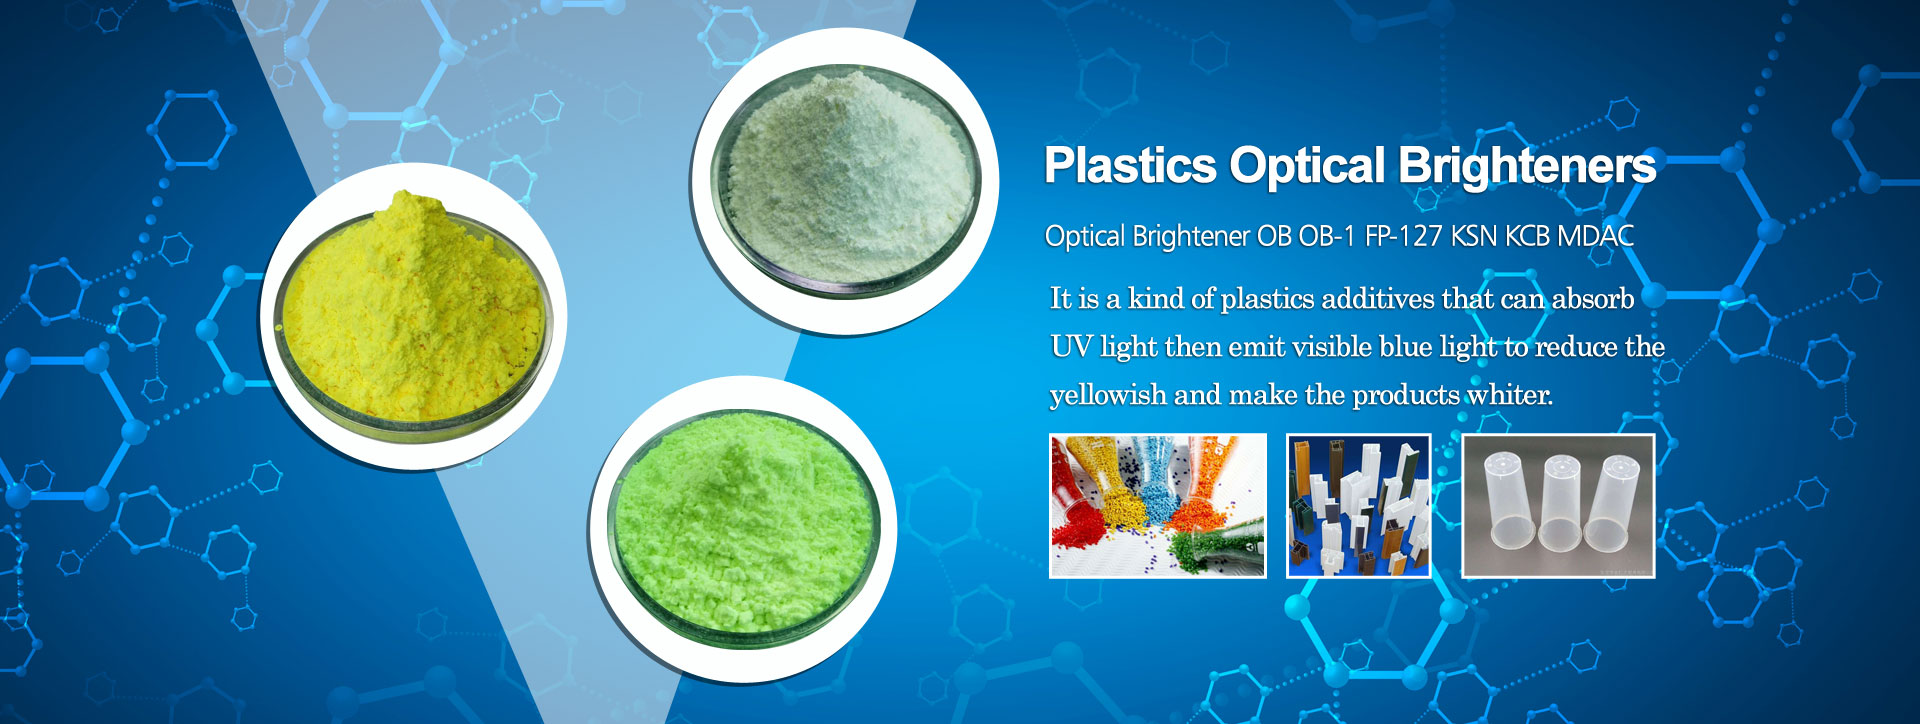 Plastics Optical Brighteners Factory